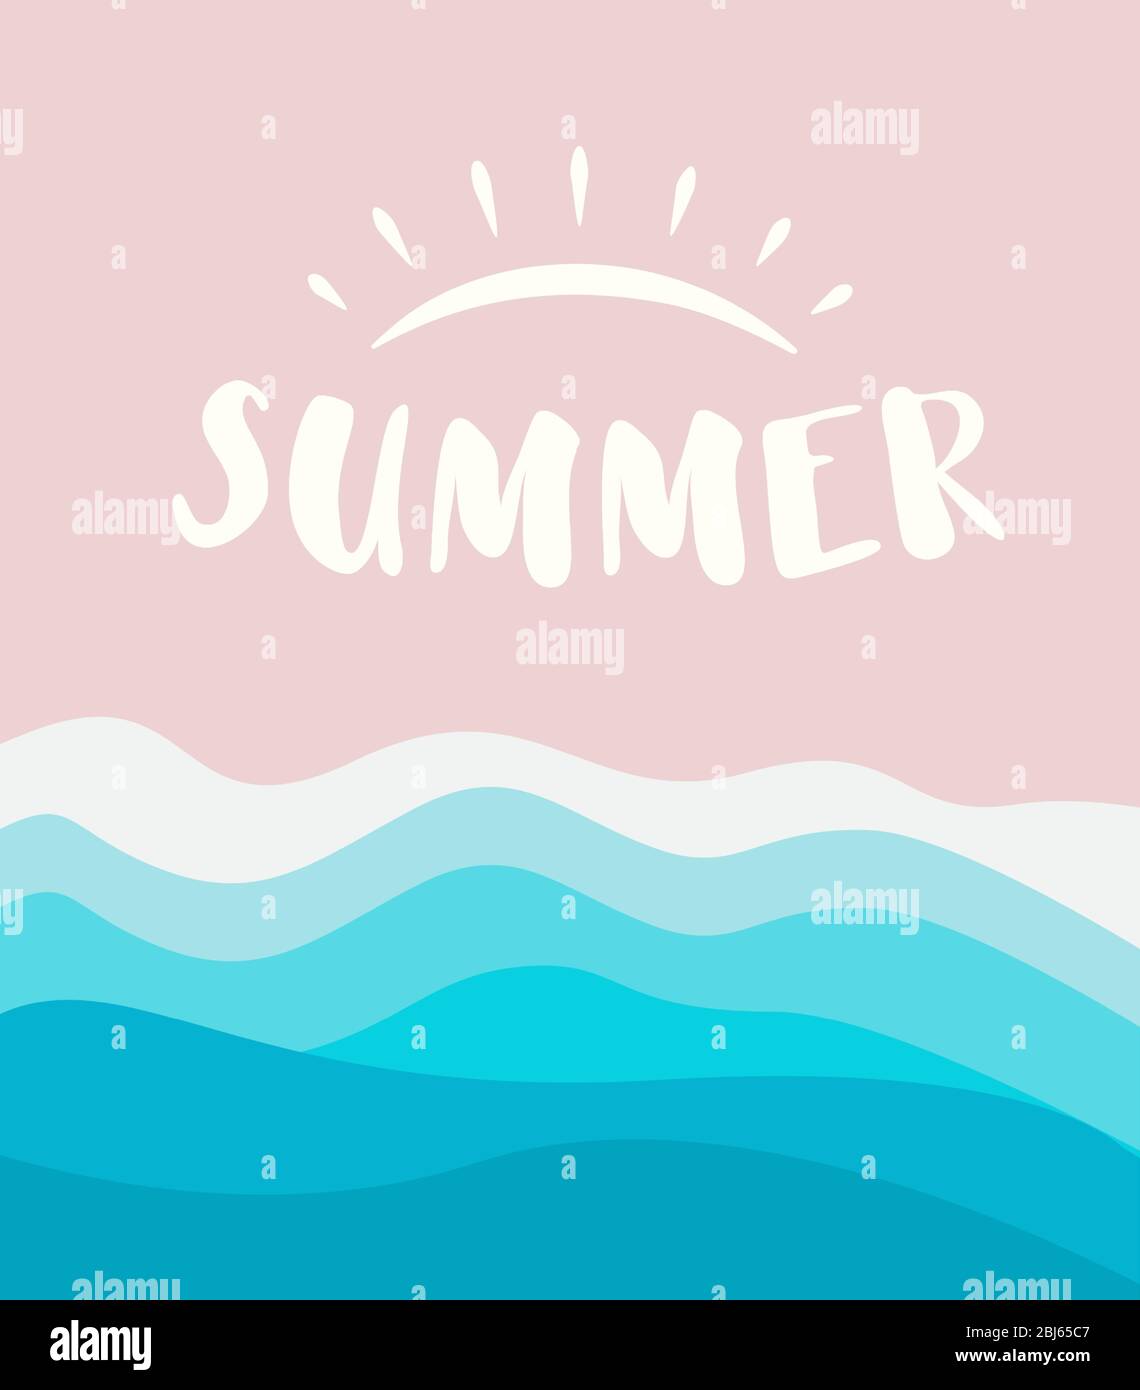 Plantilla de banner de verano con el concepto de logotipo de sol dibujado, fondo de playa de arena con olas de mar. Ilustración vectorial. Ilustración del Vector